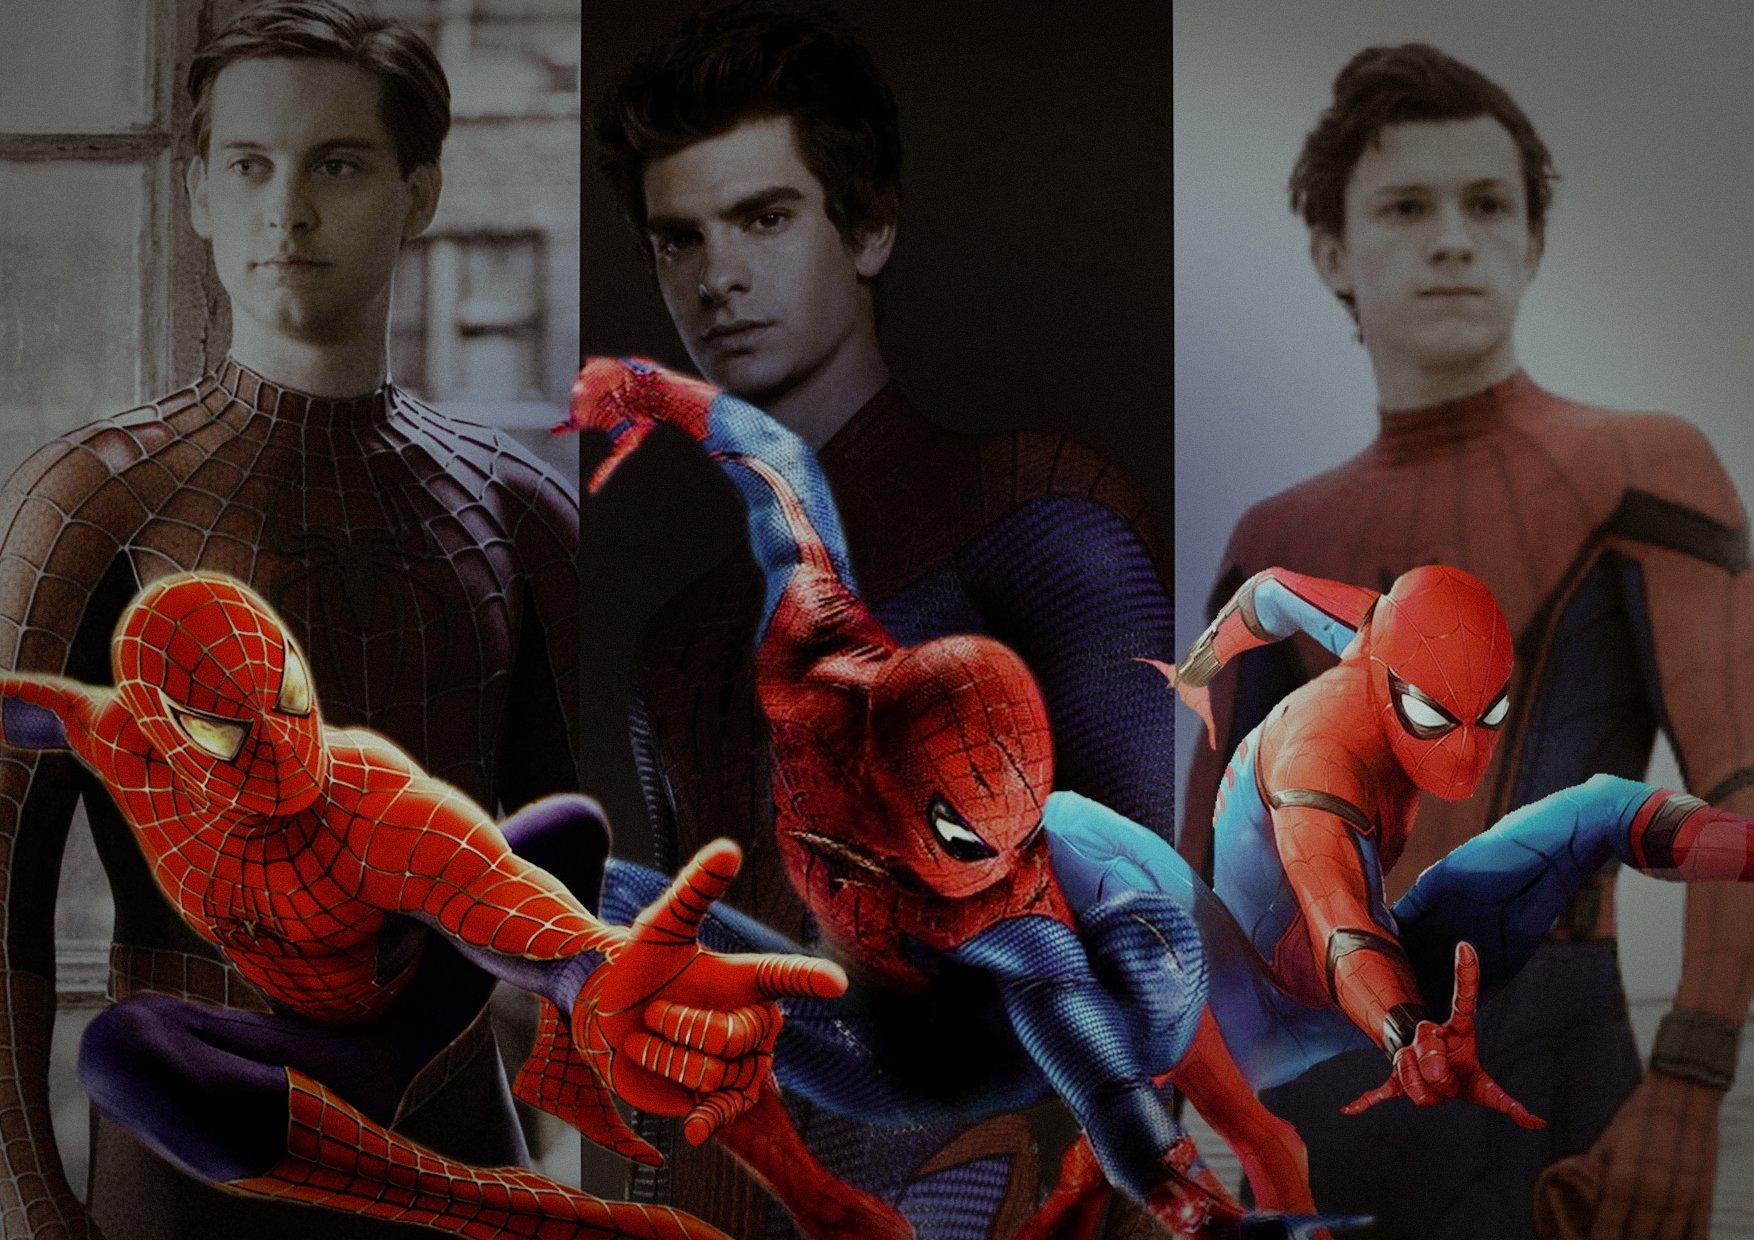 Spider Man: Người nhện là một trong những siêu anh hùng nổi tiếng nhất trong vũ trụ phim. Trong ảnh, Spider Man đang với bộ đồ mới và giữ thế độc đáo trên thành phố New York. Hãy cùng xem ảnh để tận hưởng sự giải trí và kinh ngạc.